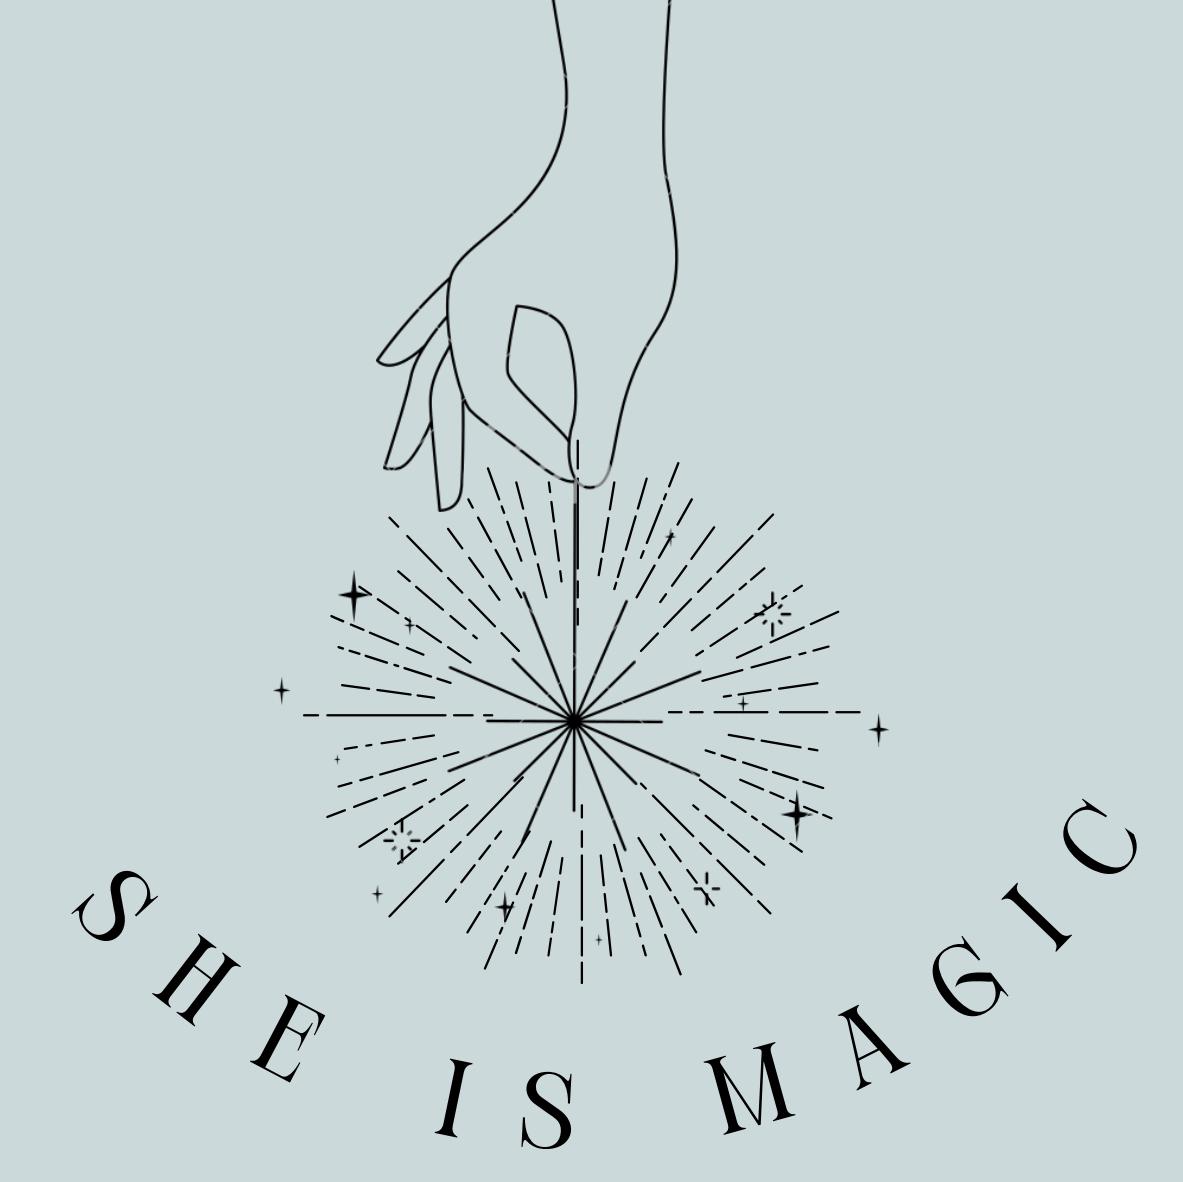 She is magic ✨